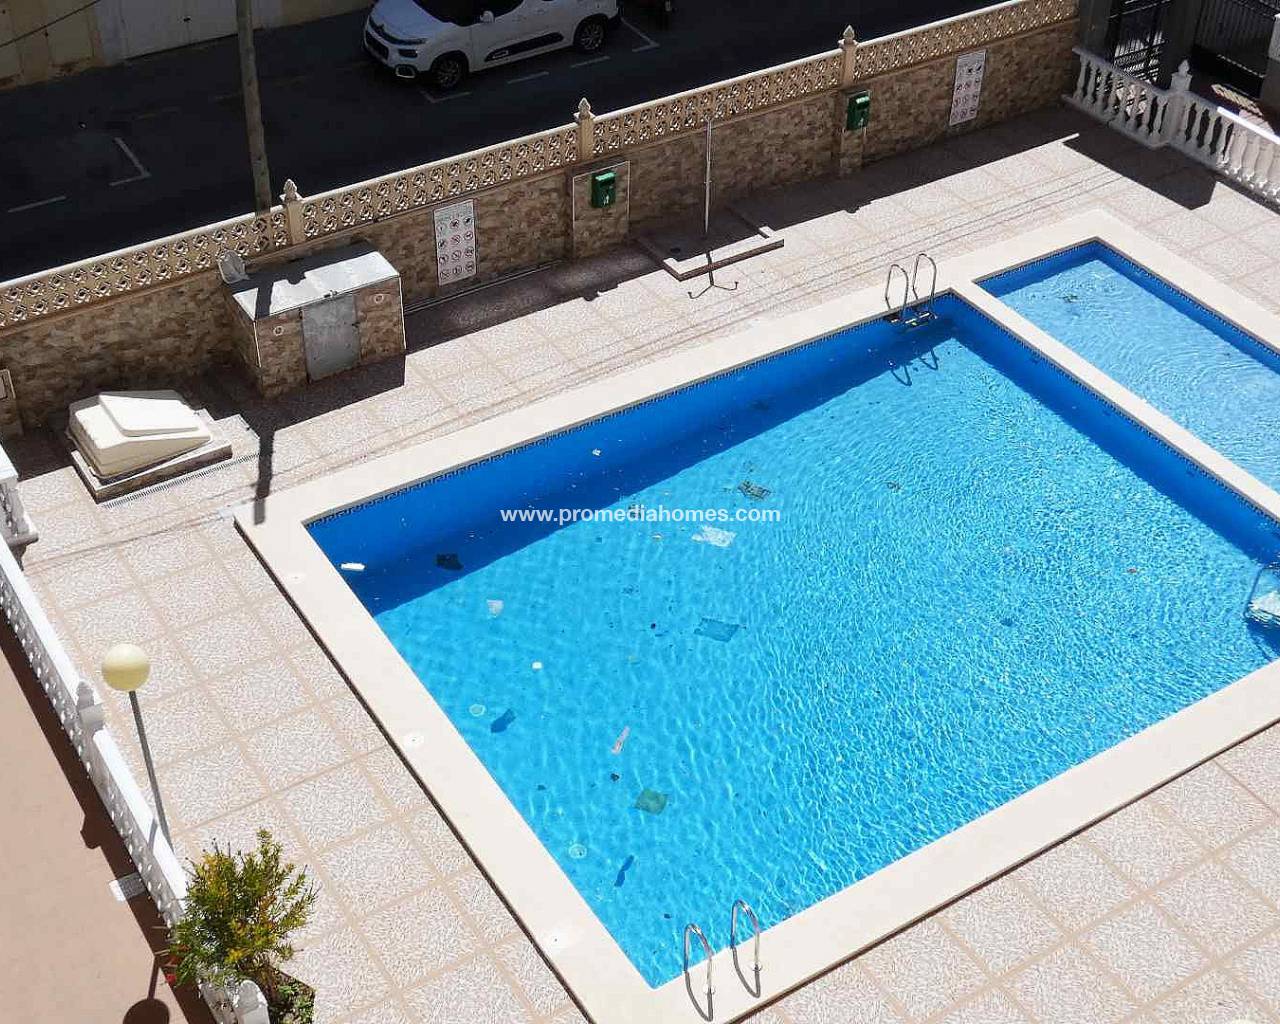 Apartamento de segunda mano en venta en Torrevieja con piscina